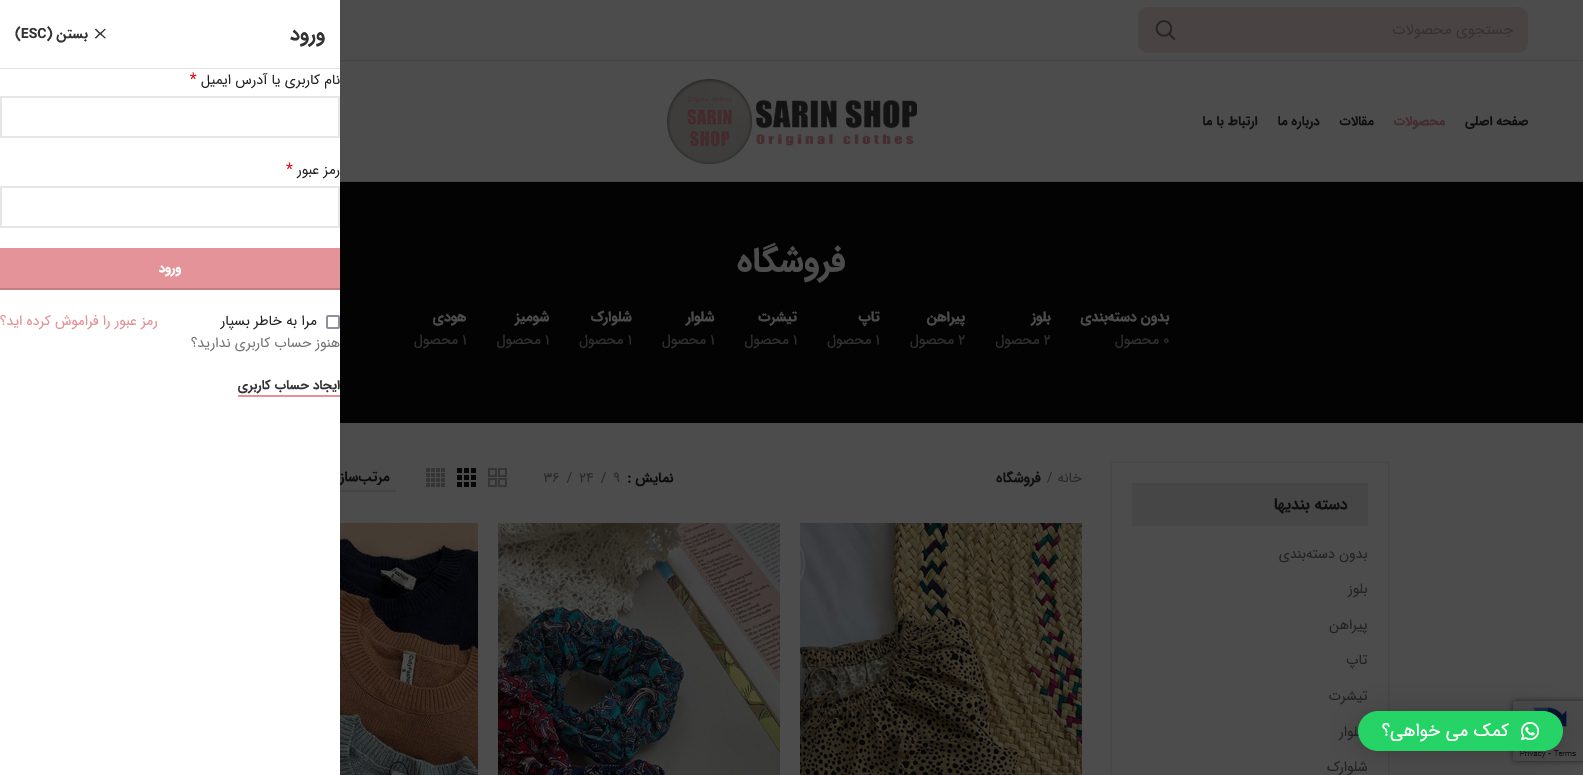 طراحی سایت فروشگاه پوشاک زنانه سارین